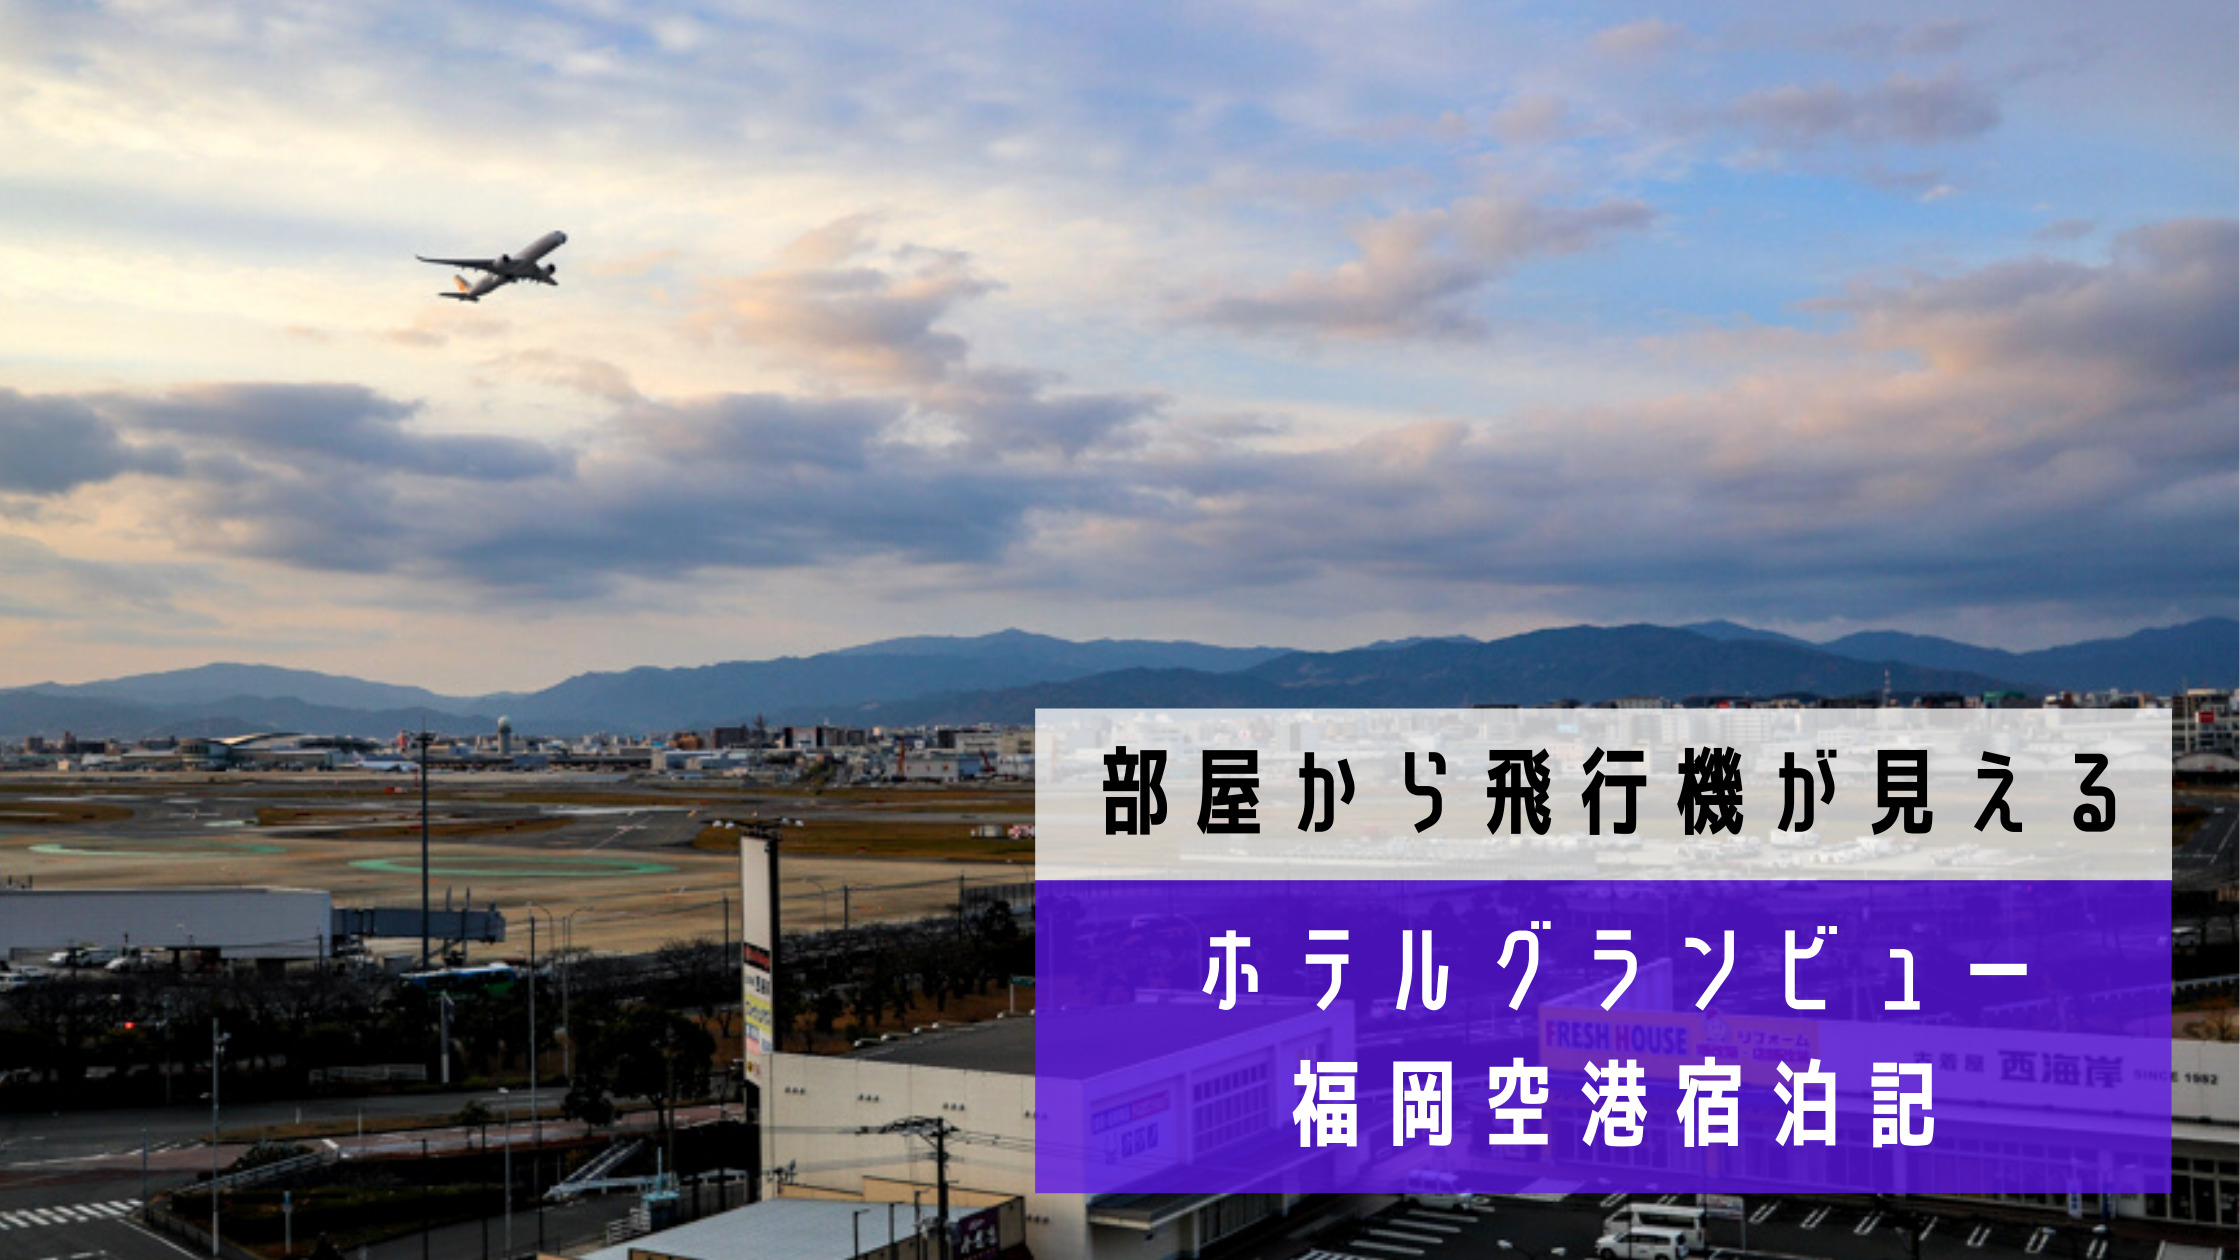 部屋から飛行機が見えるホテル ホテルグランビュー福岡空港 ブログ宿泊記 シテイリョウコウ